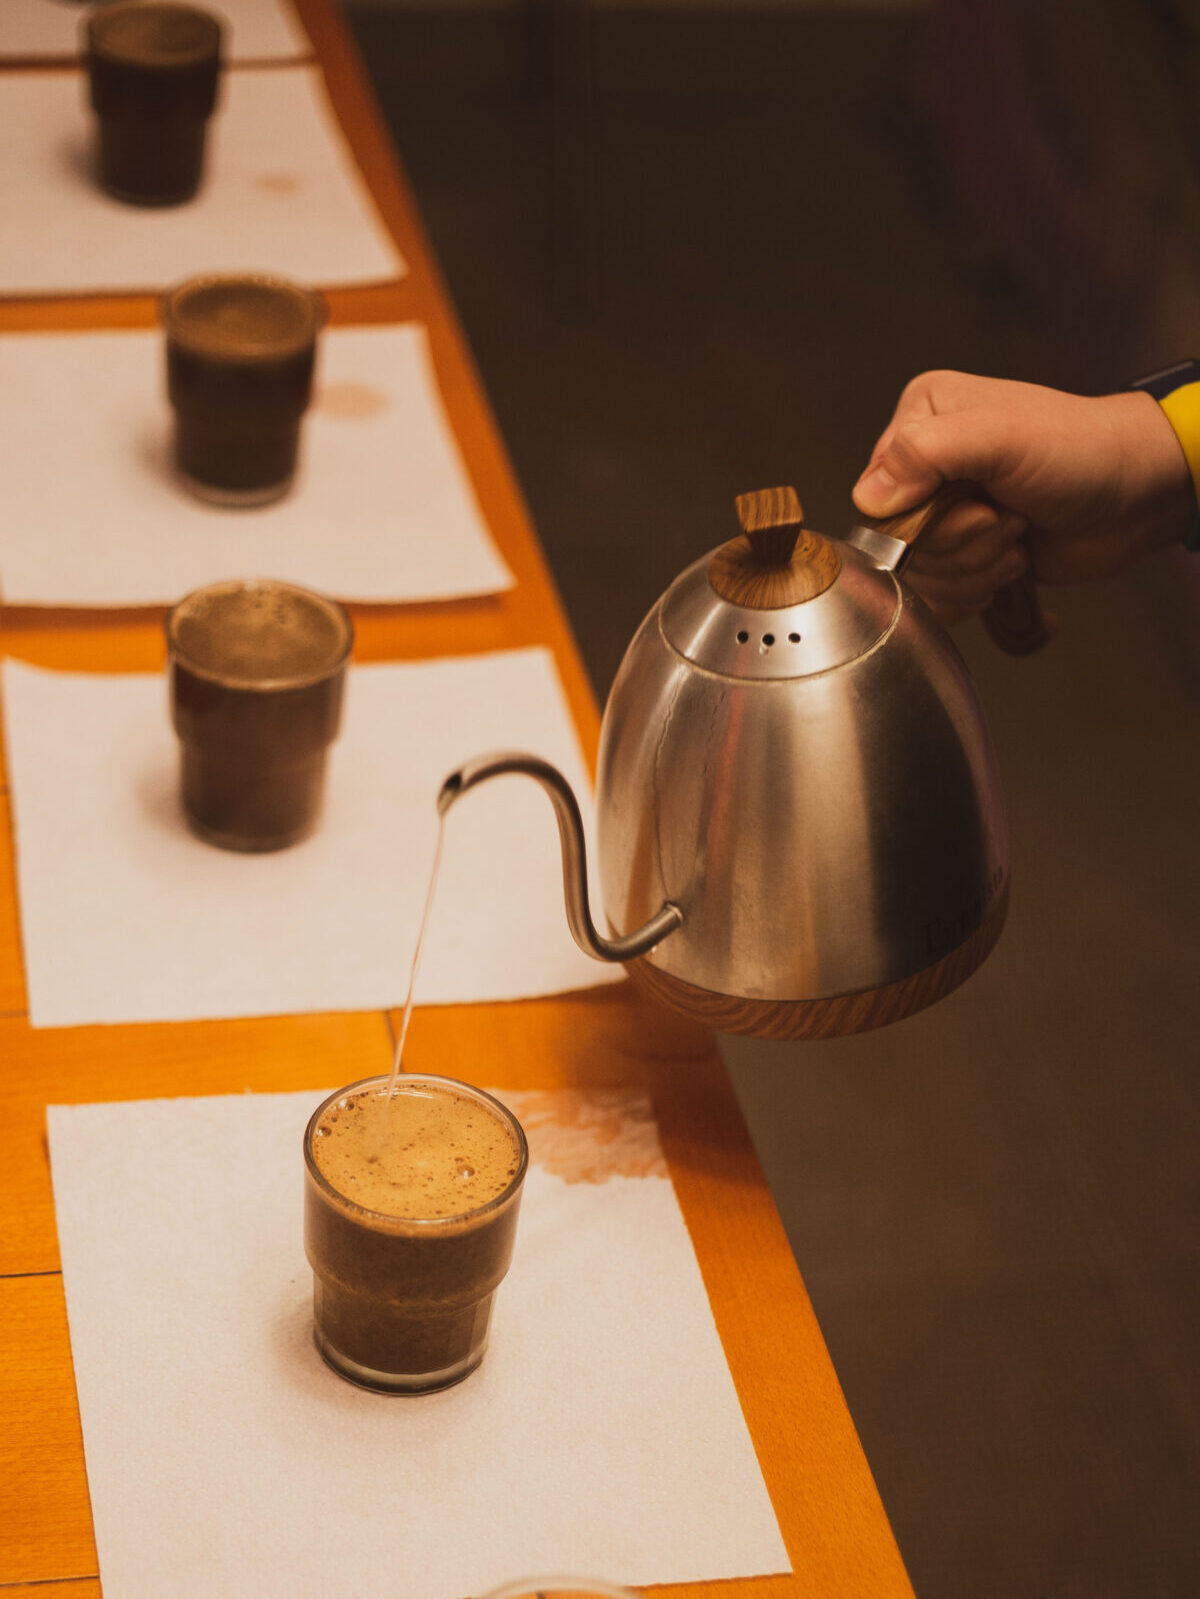 Рука наливает горячую воду из чайника на гусиной шее на кофейную гущу в прозрачные стеклянные чашки.